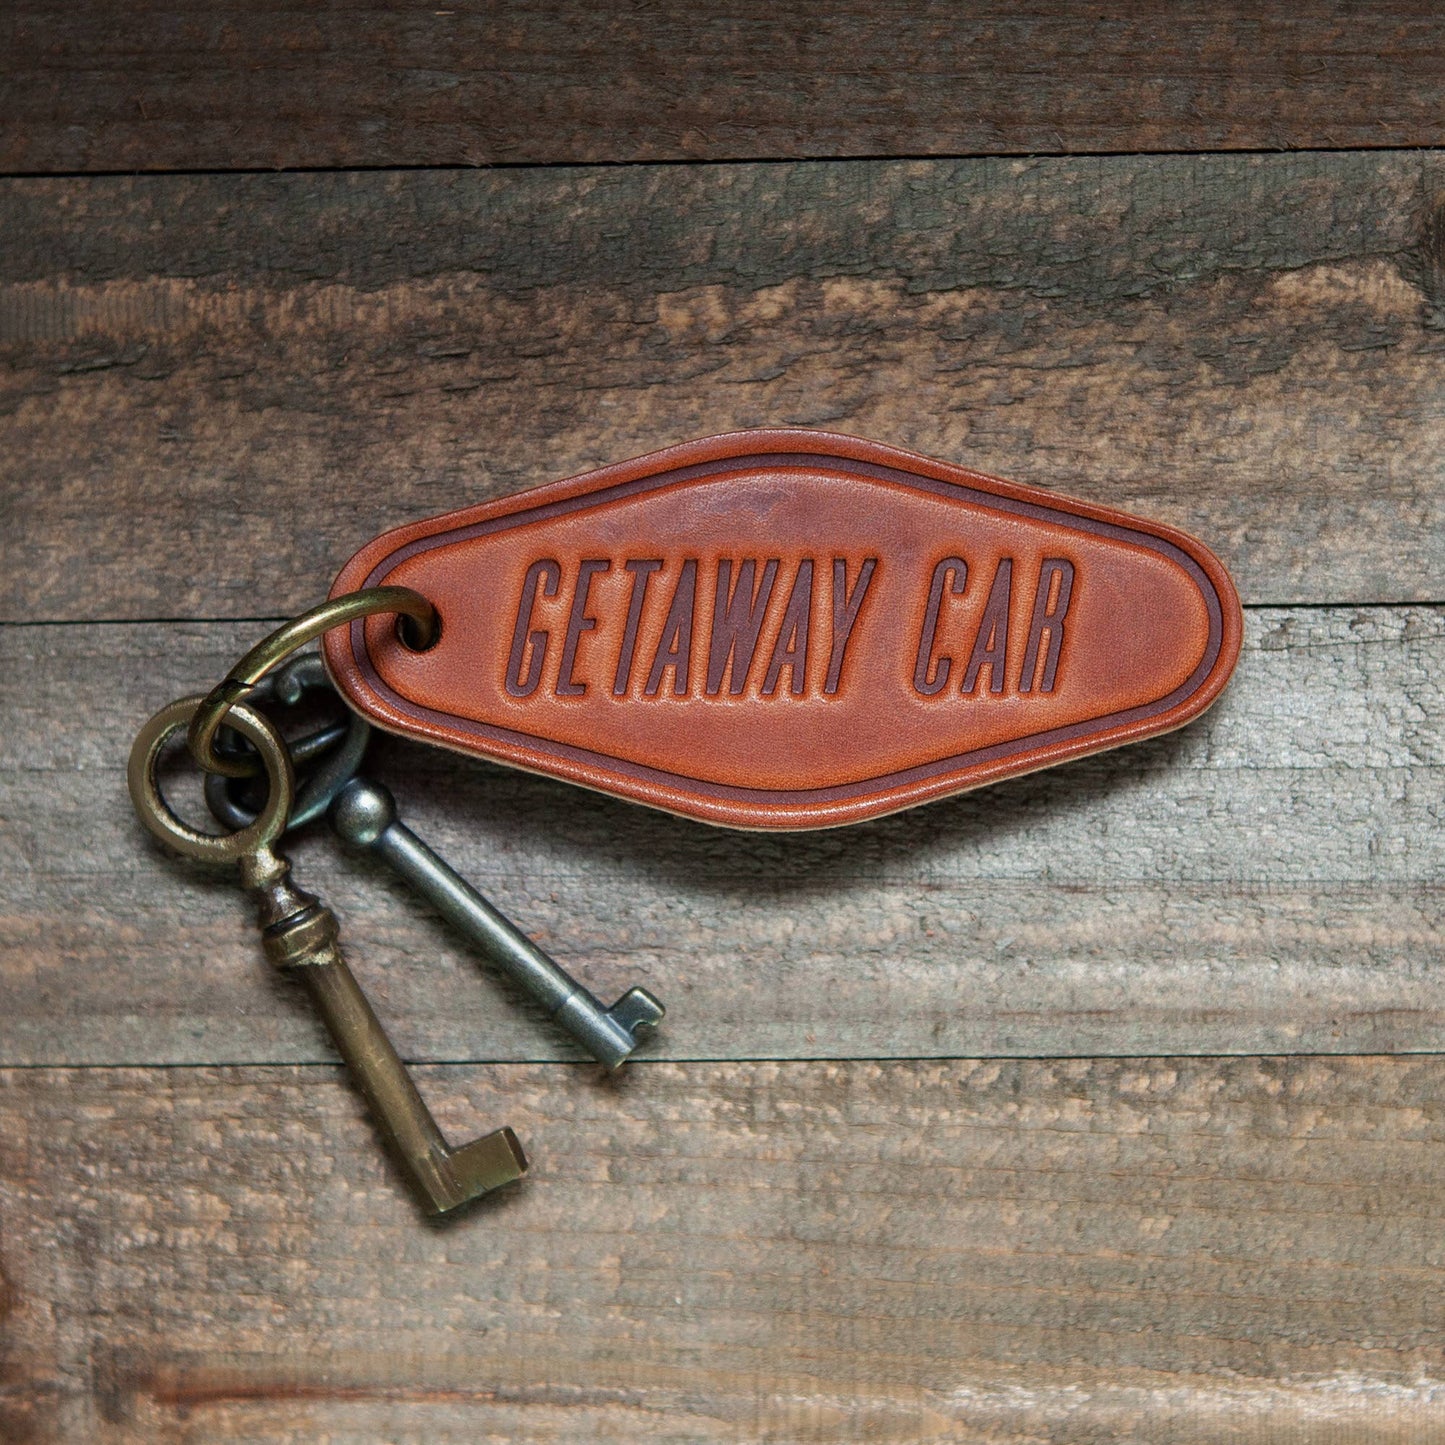 Getaway Car Leather Motel Keychain